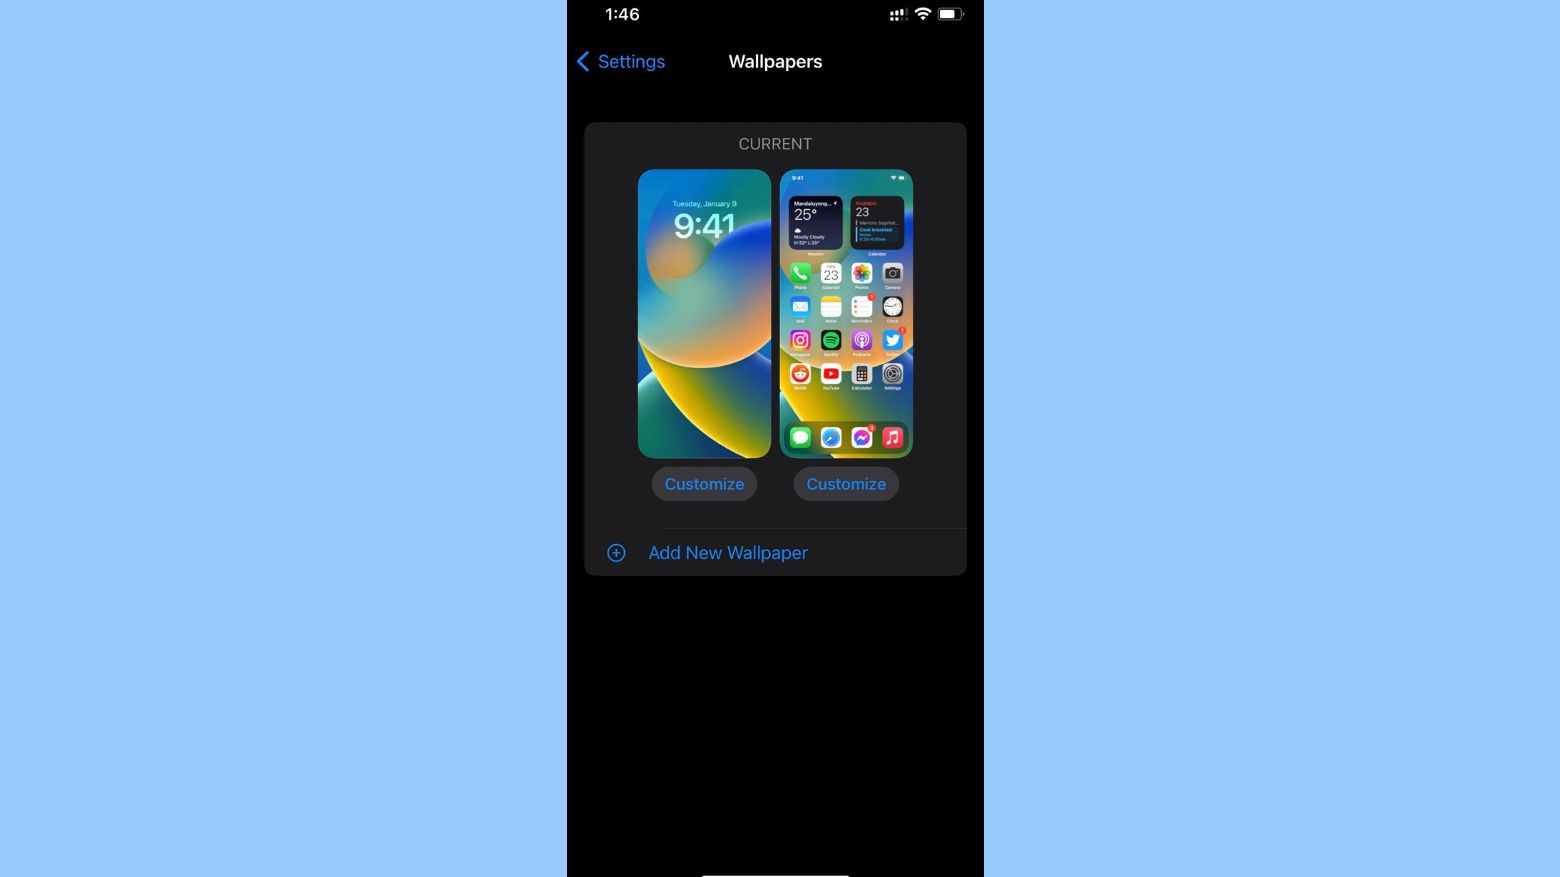 Tweaked Wallpaper picker UI in iOS 16 beta 2